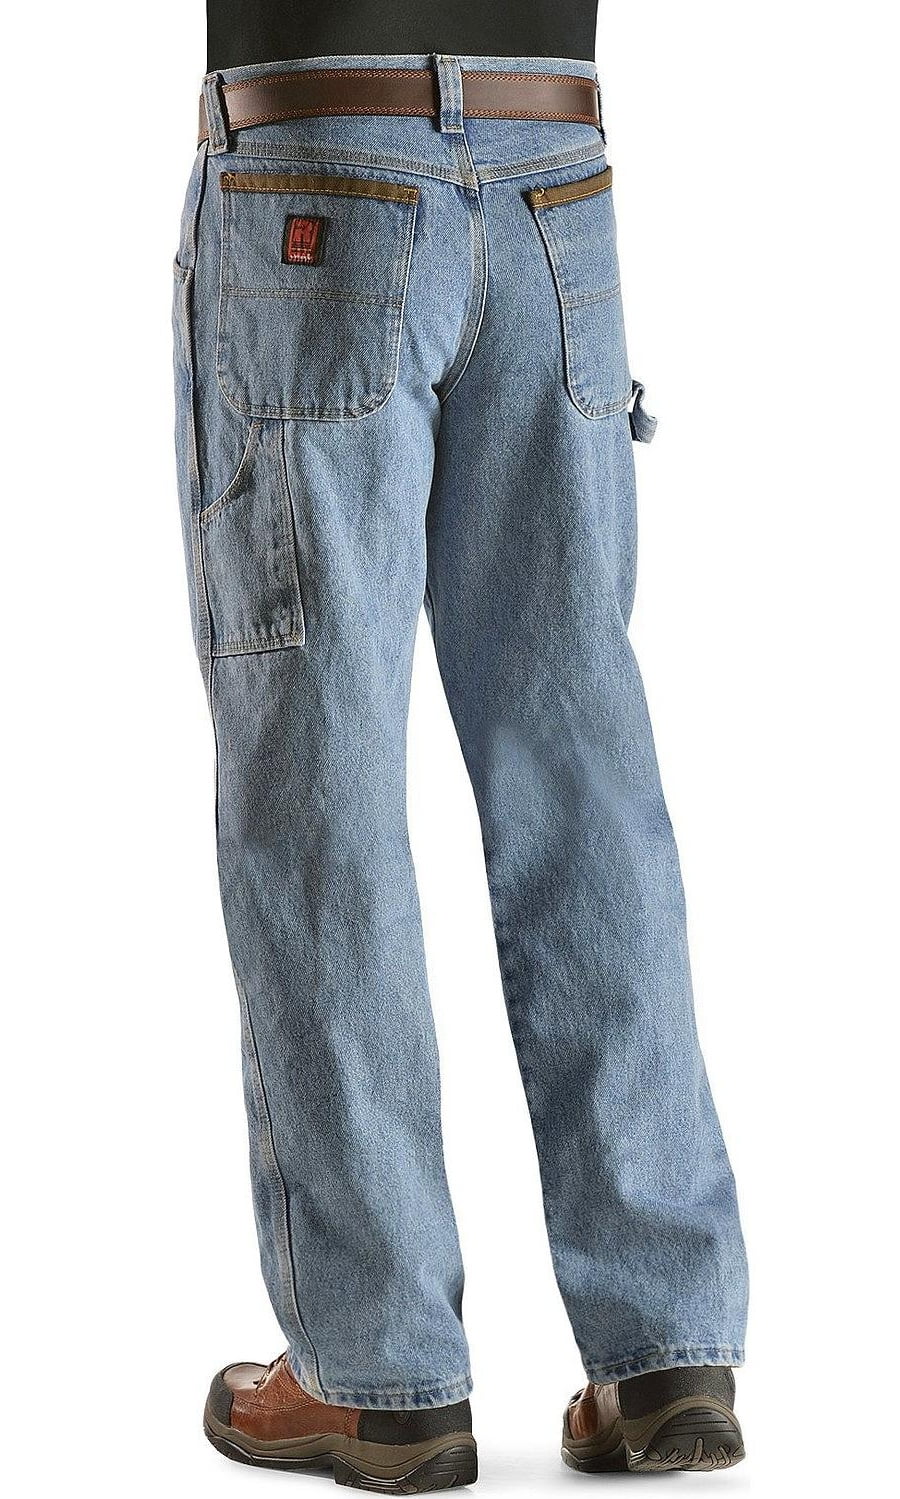 vintage carpenter jeans